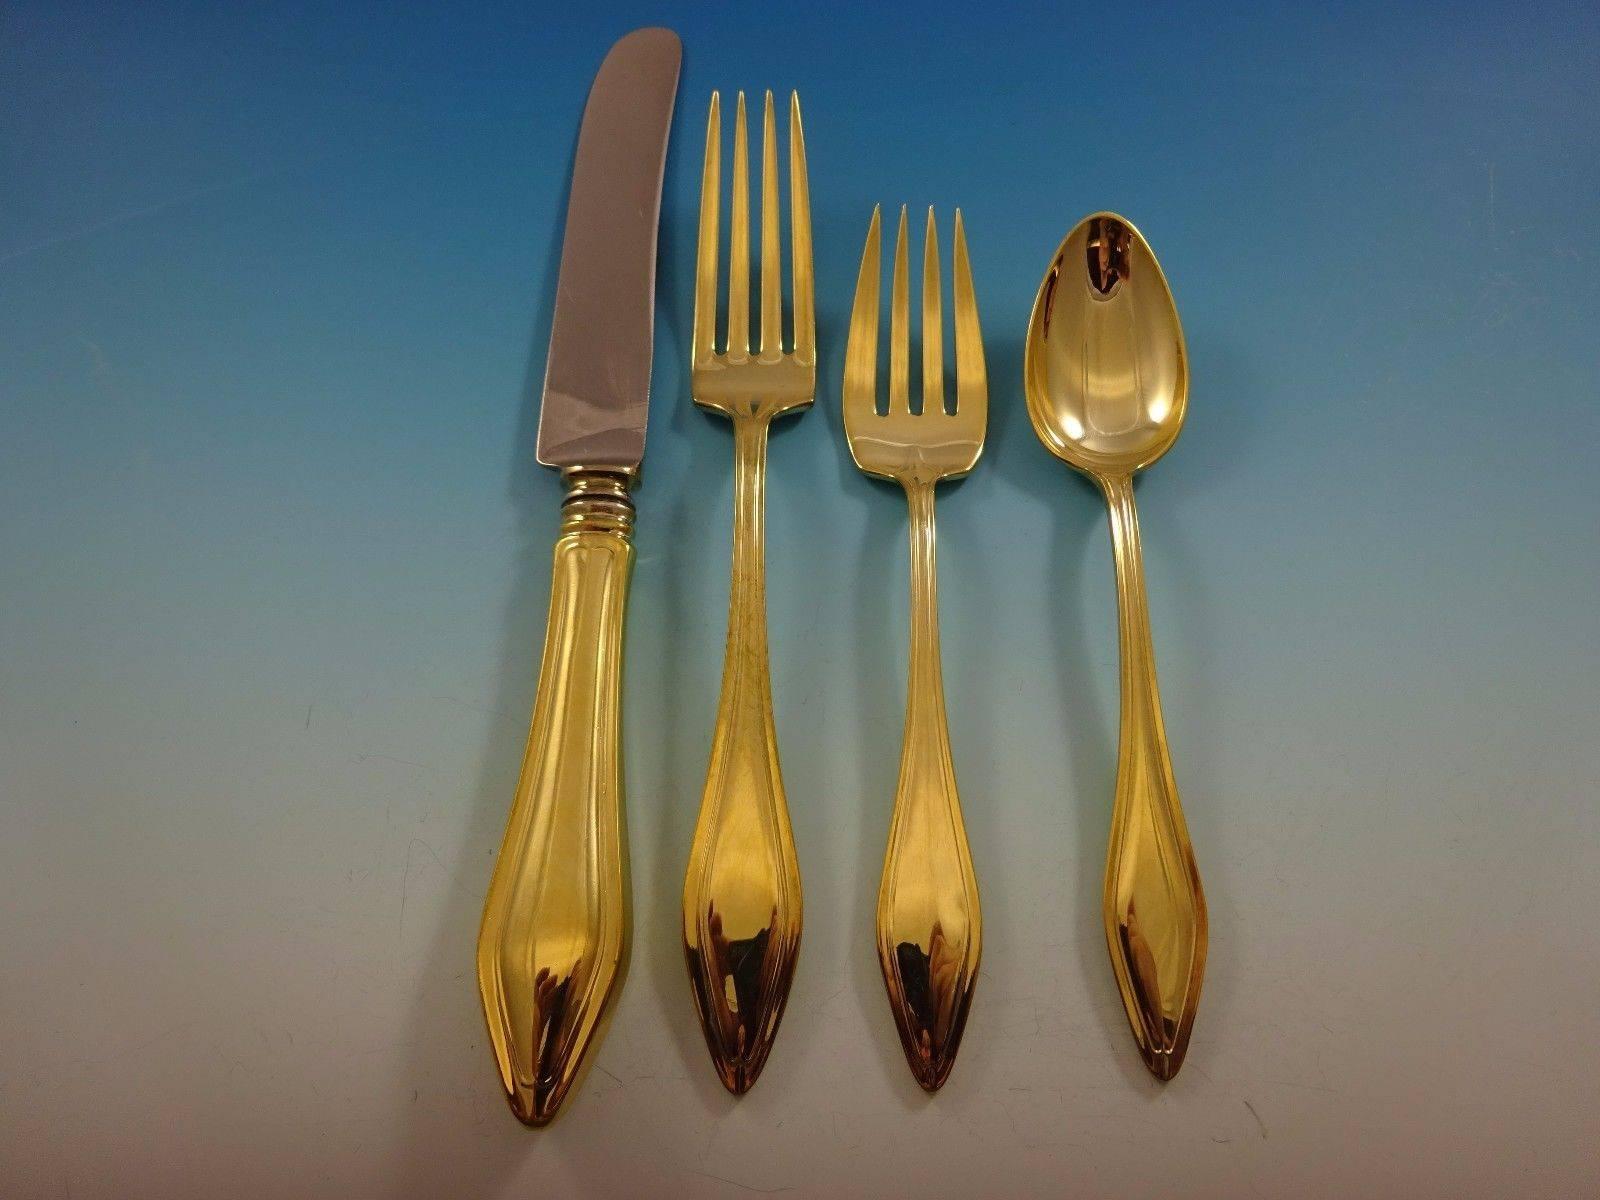 Mary Chilton Gold by Towle Besteck aus Sterlingsilber - 24 Teile. Dieses Set ist vergoldet (komplett goldgewaschen) und enthält: 

6 Messer, 9